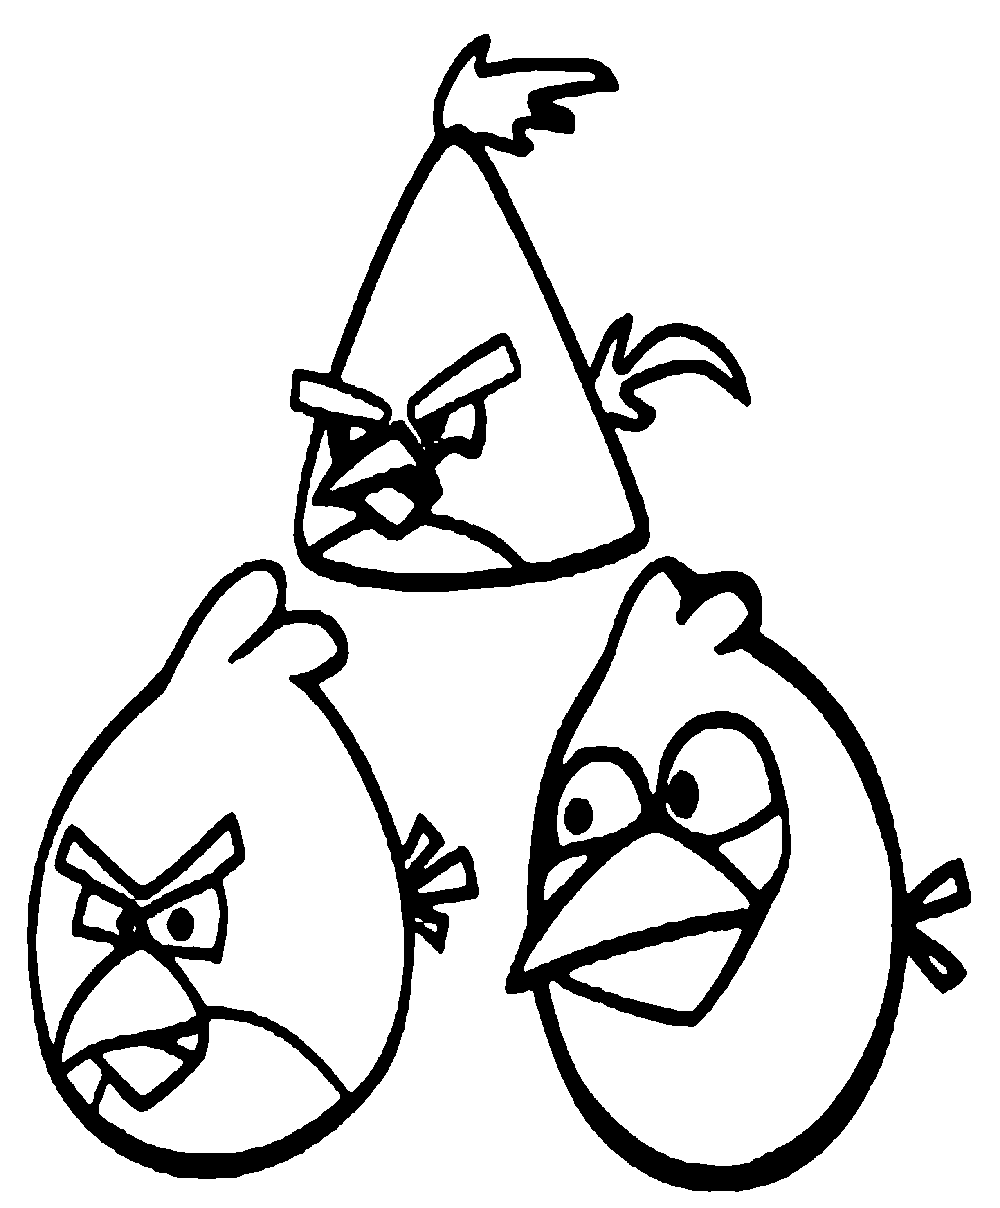 Coloração simples de Angry Birds para crianças